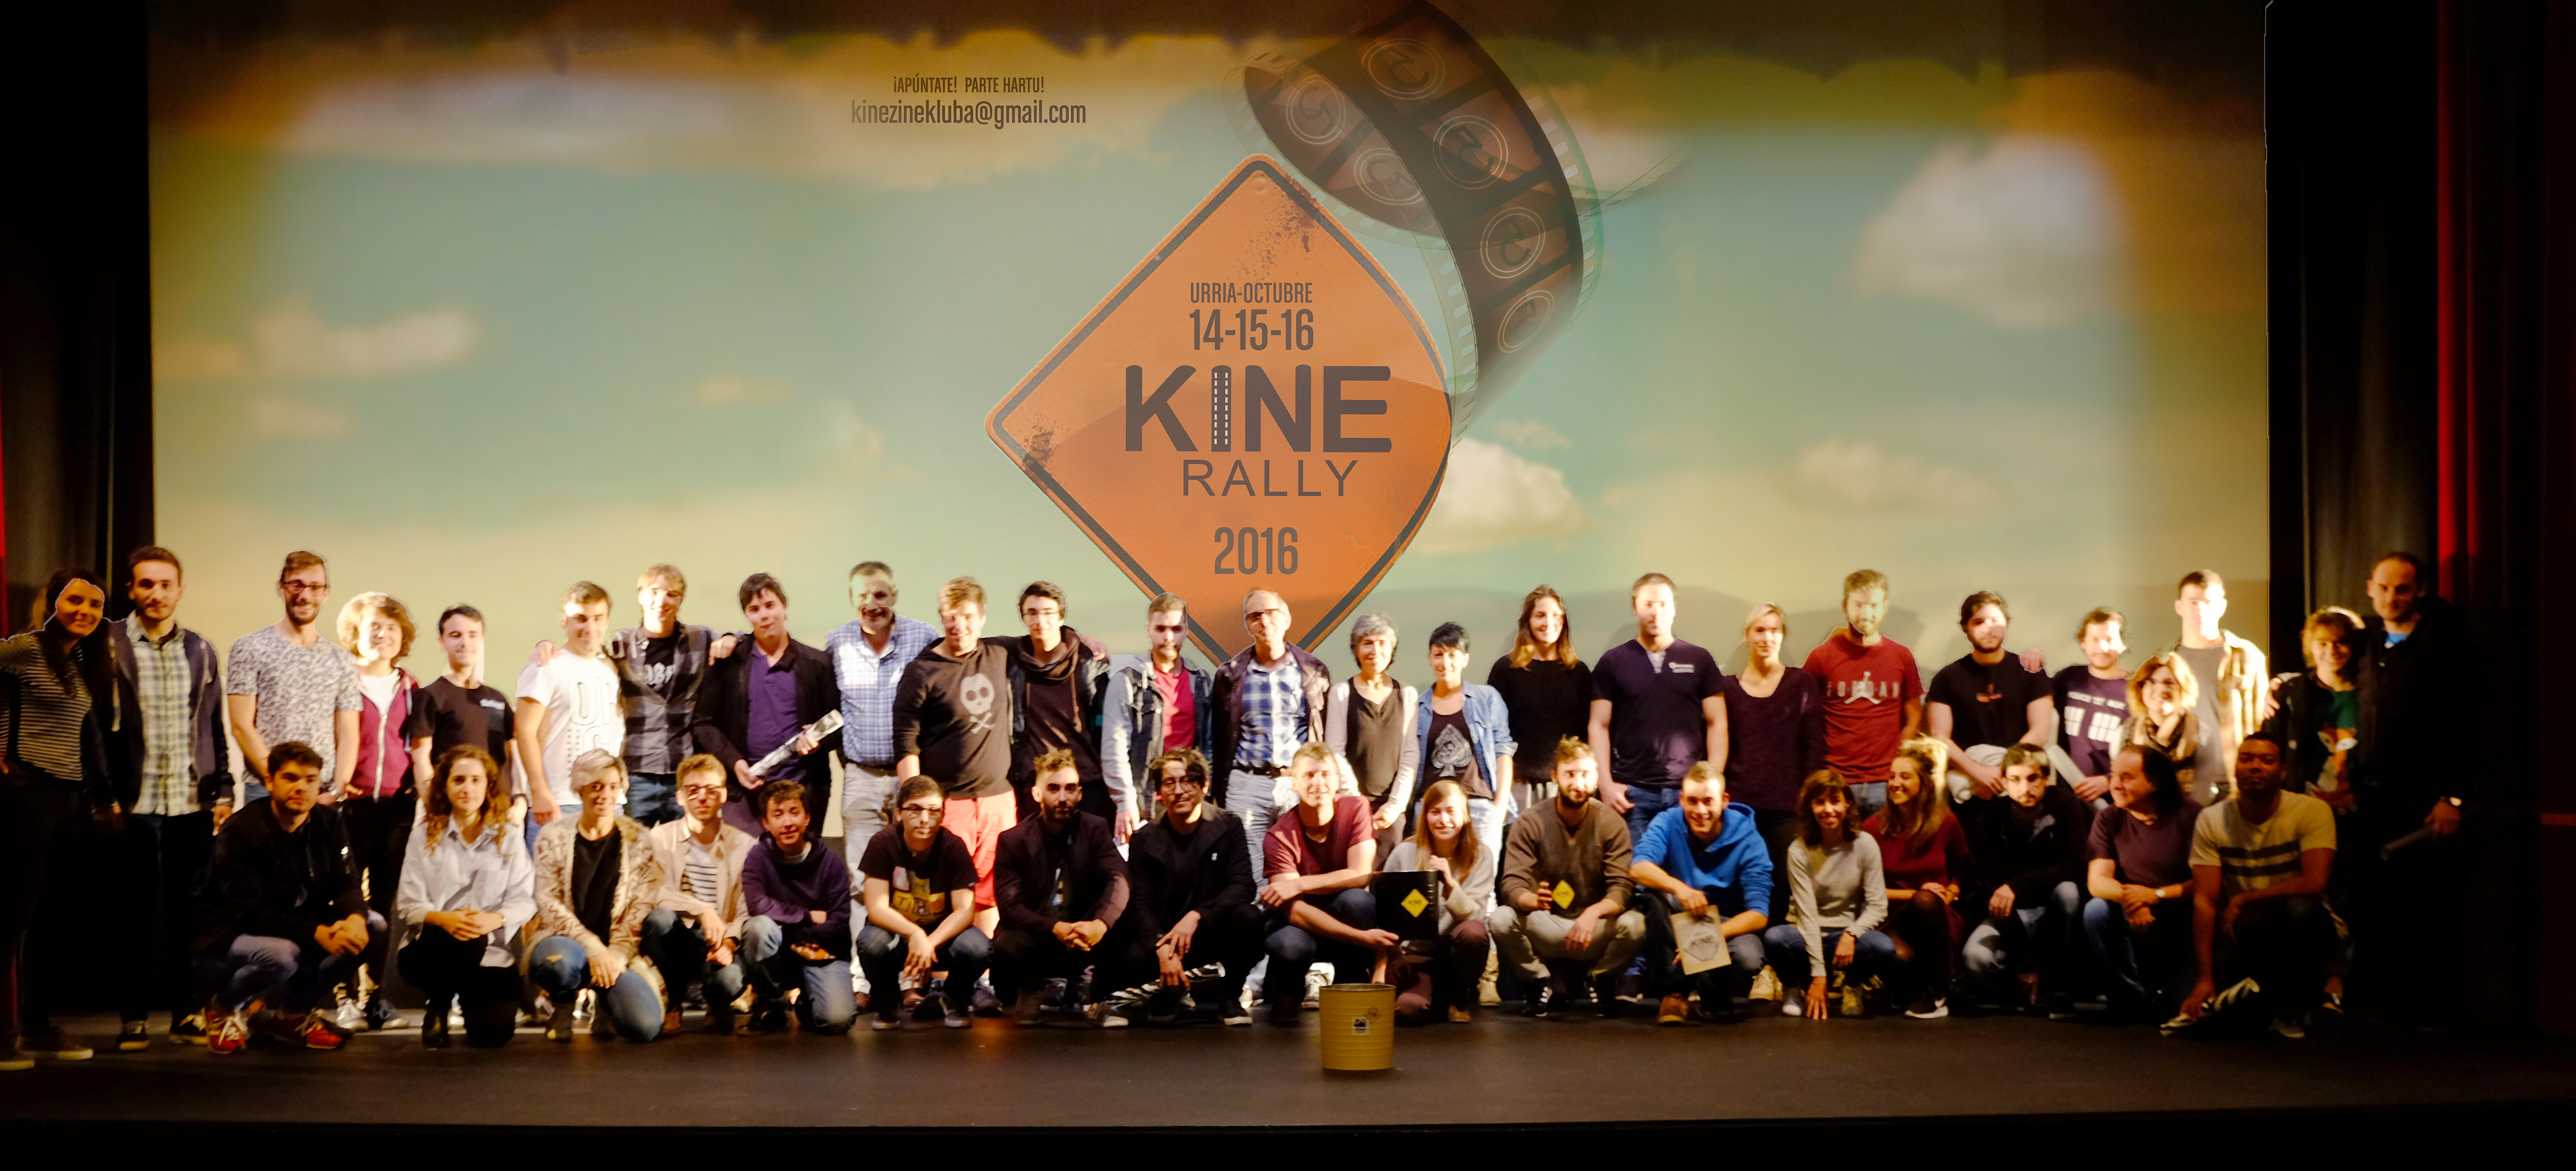 El equipo Topazio gana la segunda edición del festival Kine Rally